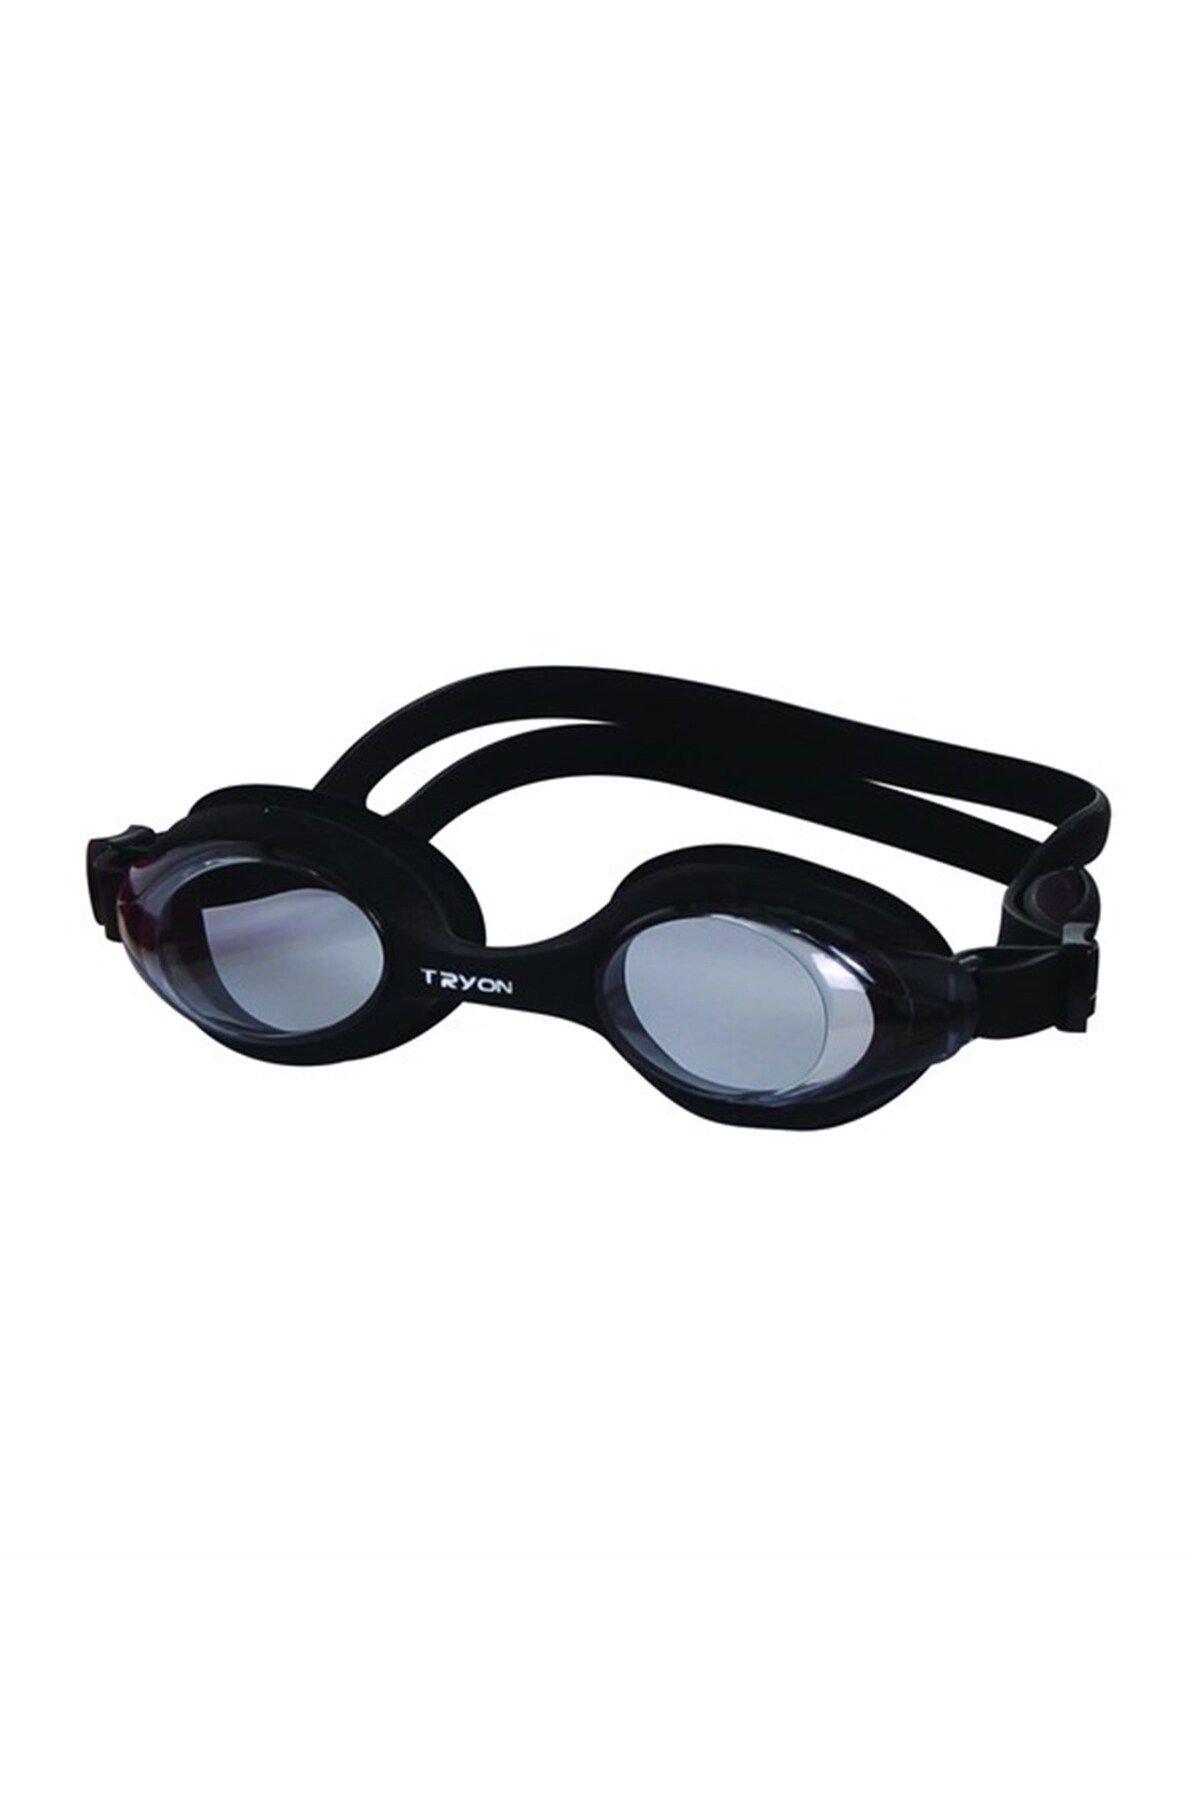 TRYON Siyah Yüzücü Gözlüğü - YG-400